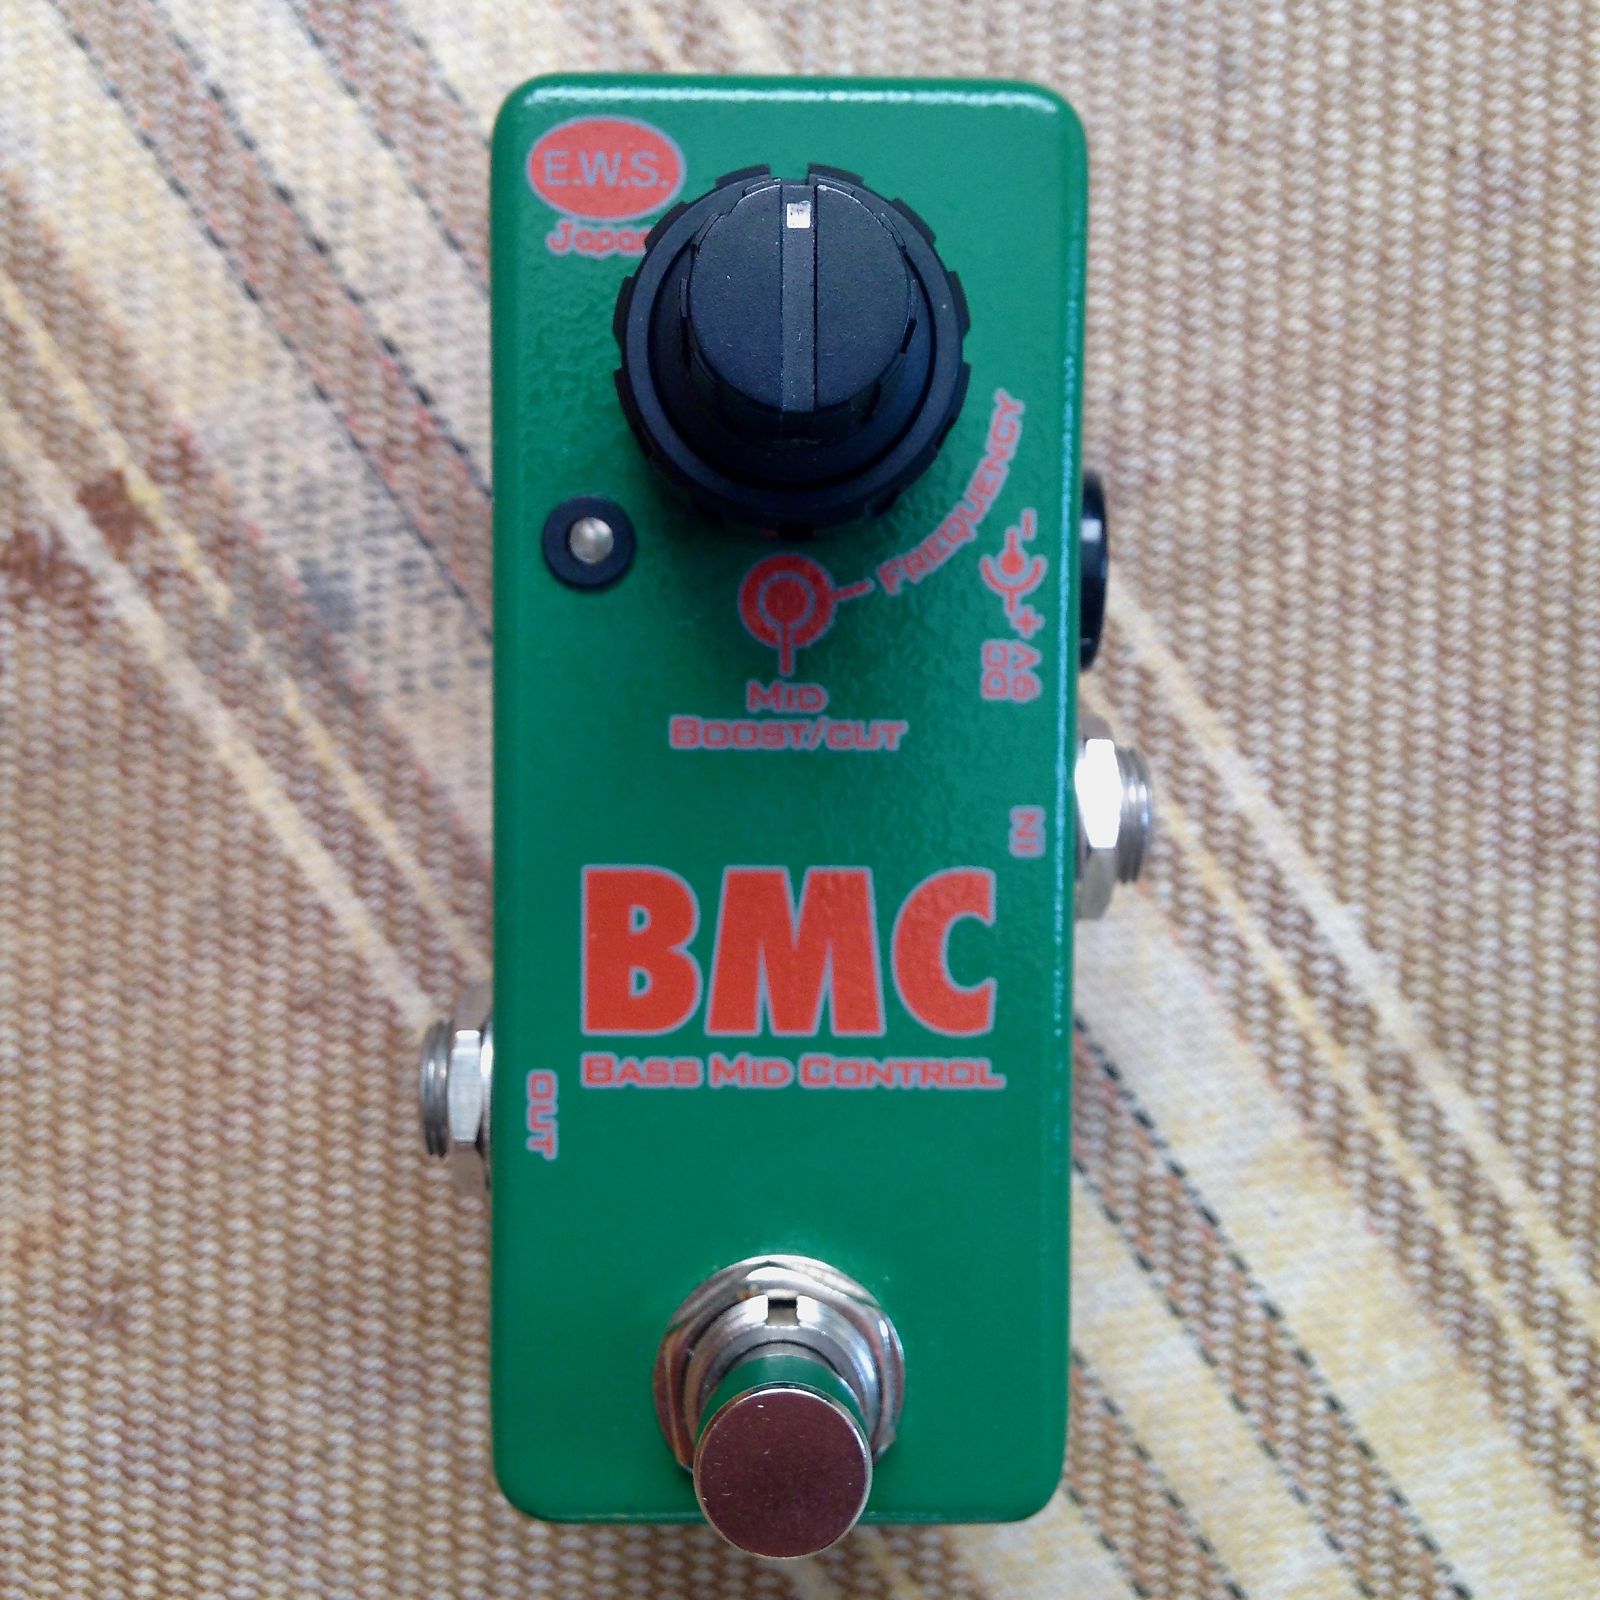 E.W.S. BMC Bass Mid Control